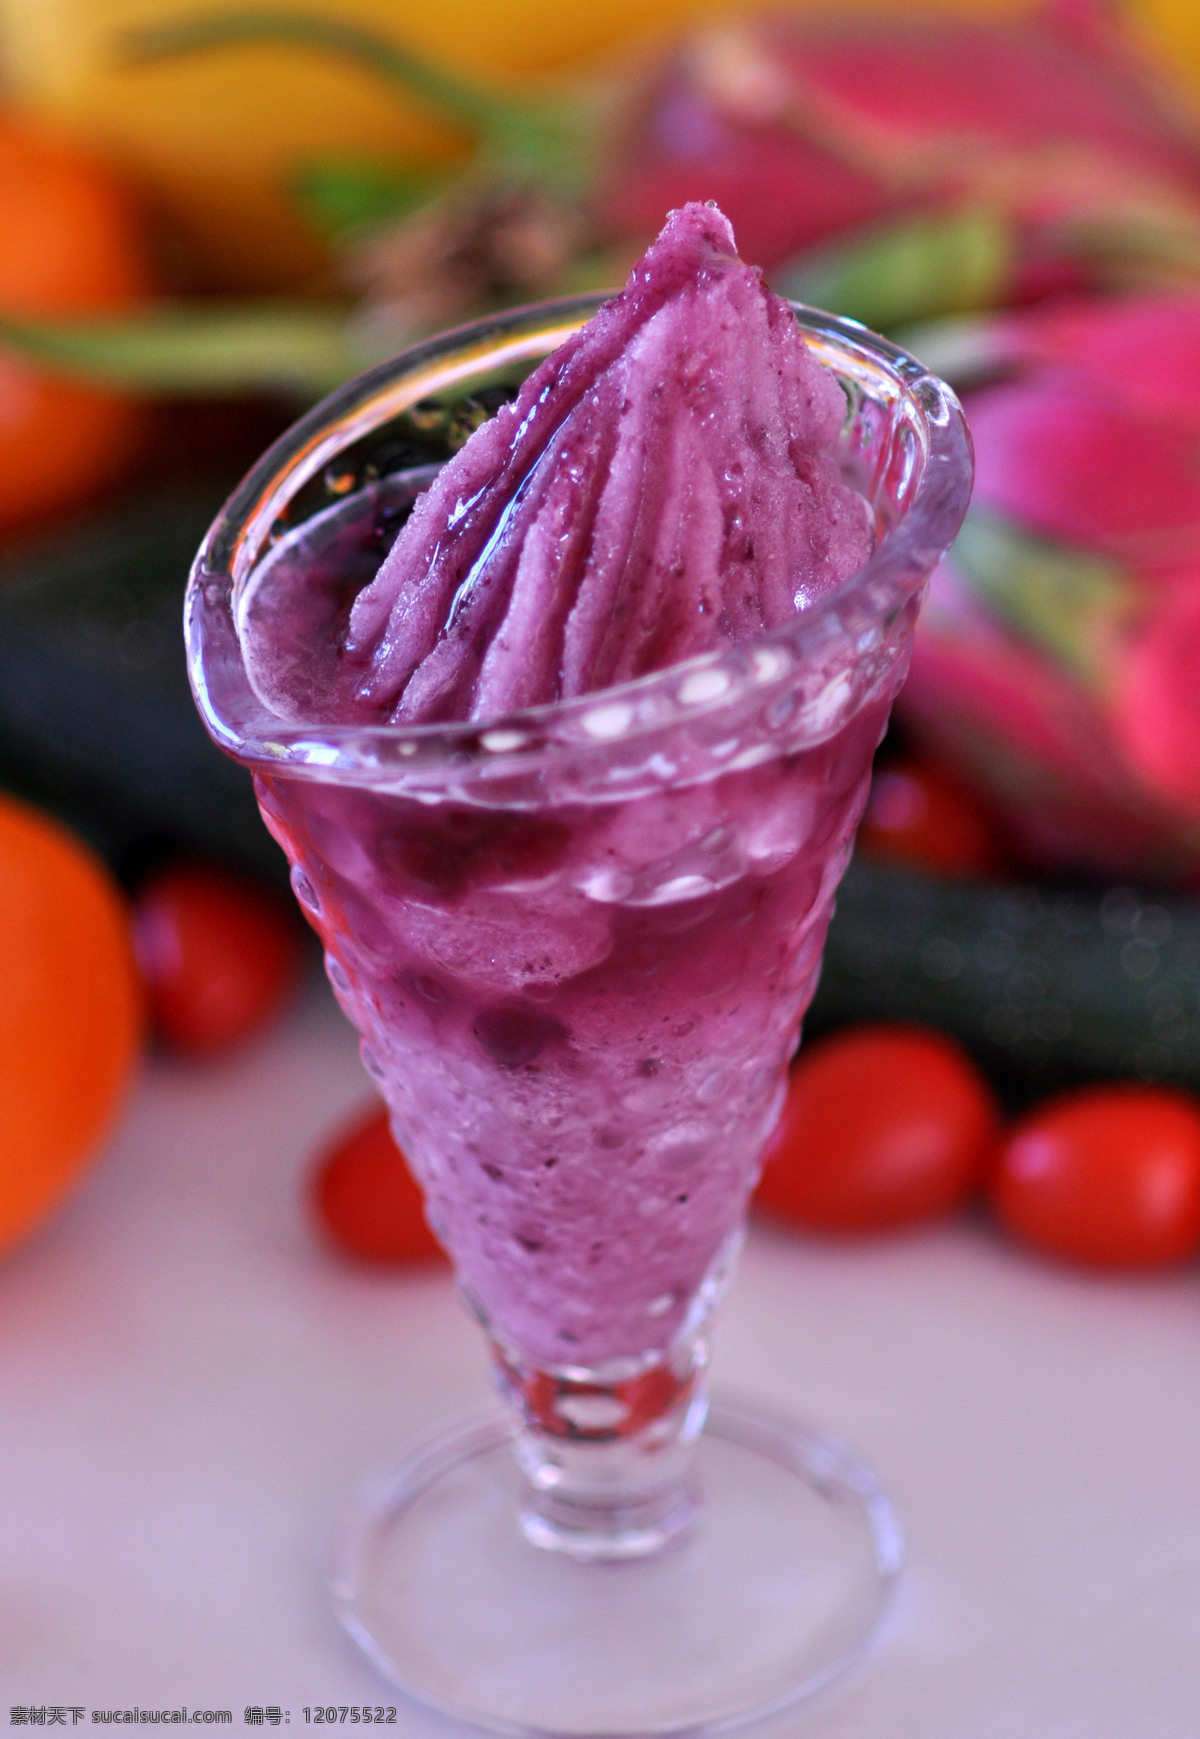 蓝莓冰沙 草莓冰沙 饮品 冷饮 冰沙 水果冰沙 餐饮美食 饮料酒水